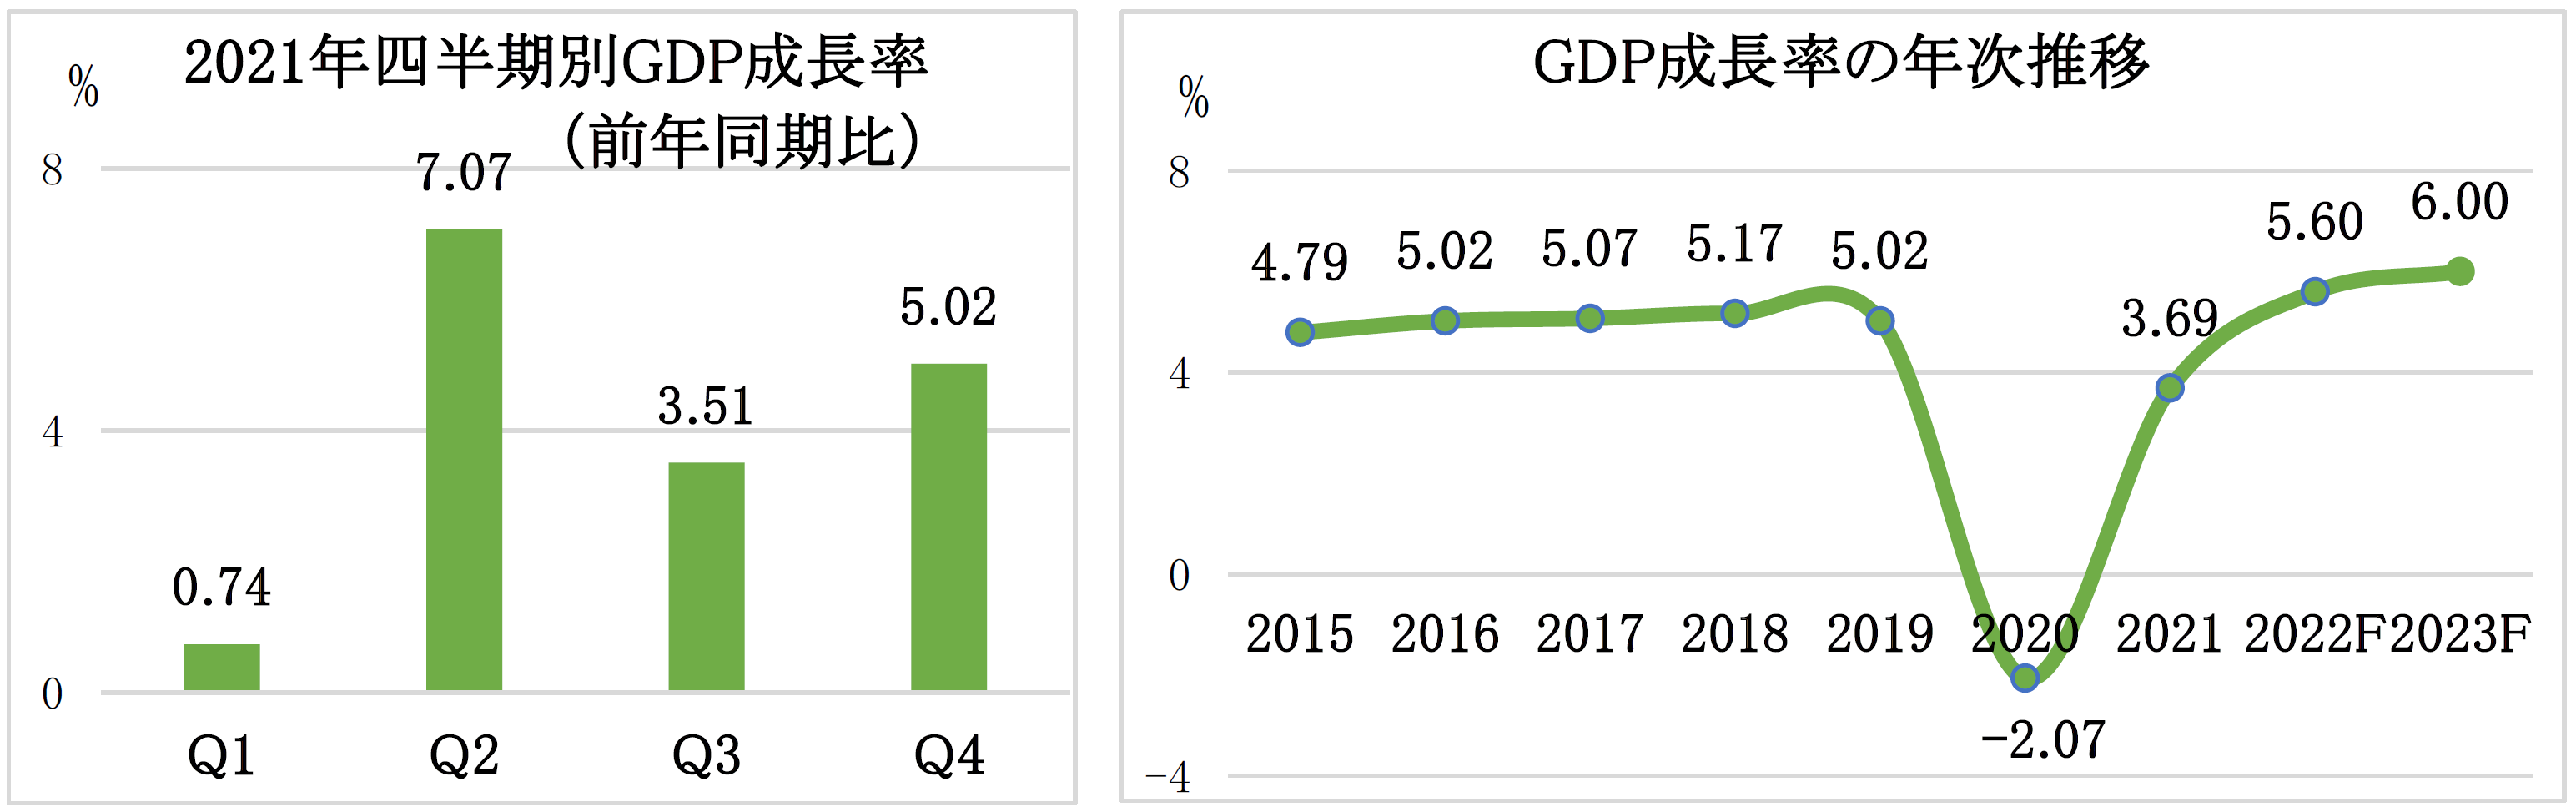 インドネシア2021年GDP成長率+3.69%